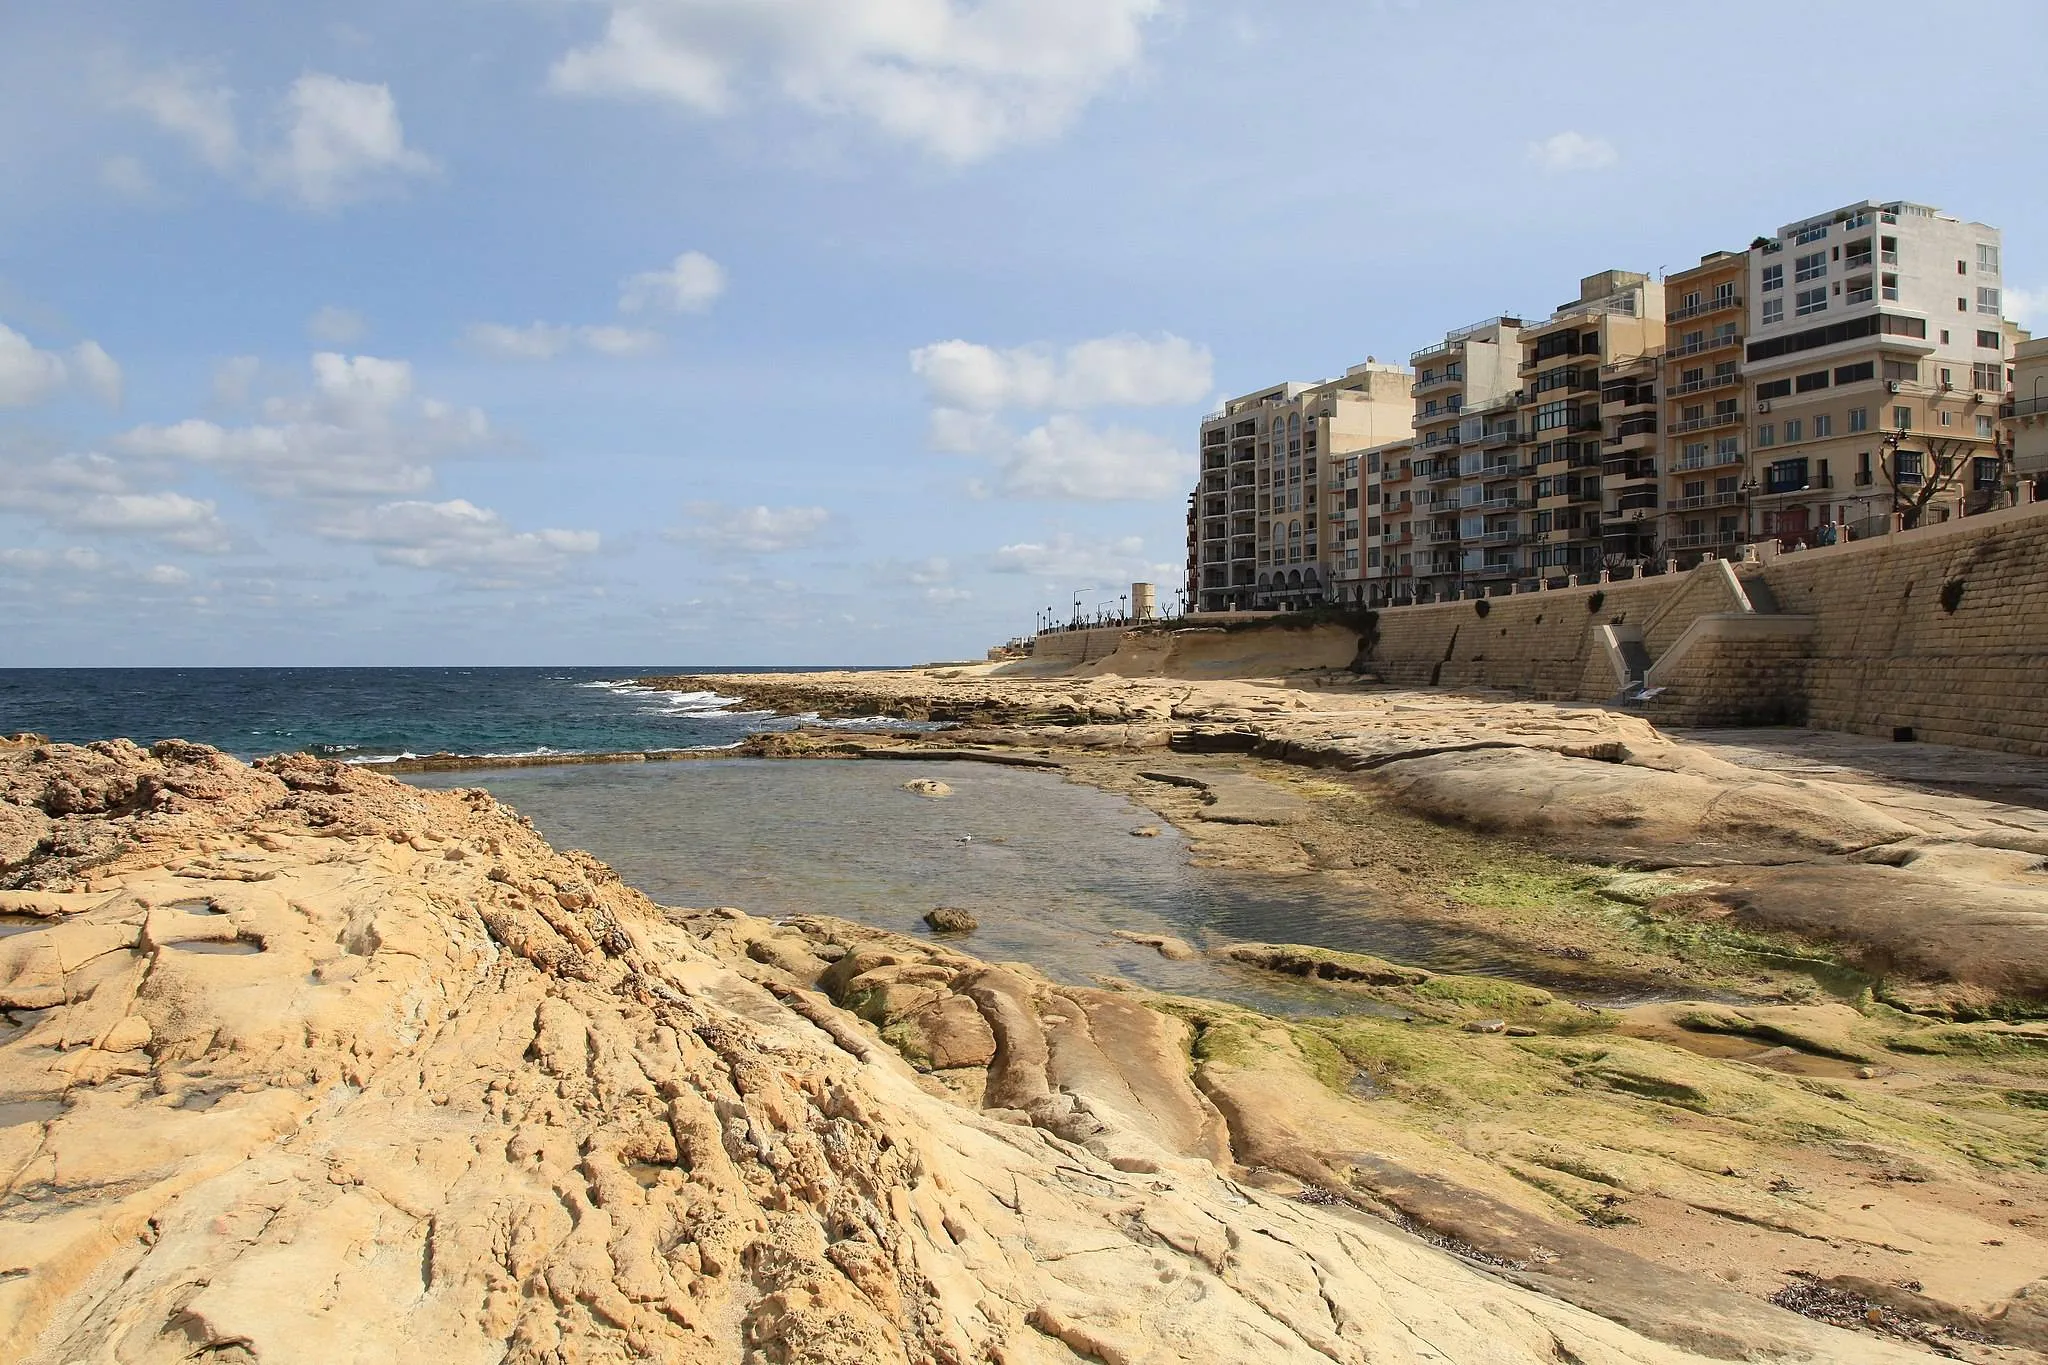 Fond Ghadir Beach in Malta, Europe | Beaches - Rated 3.7